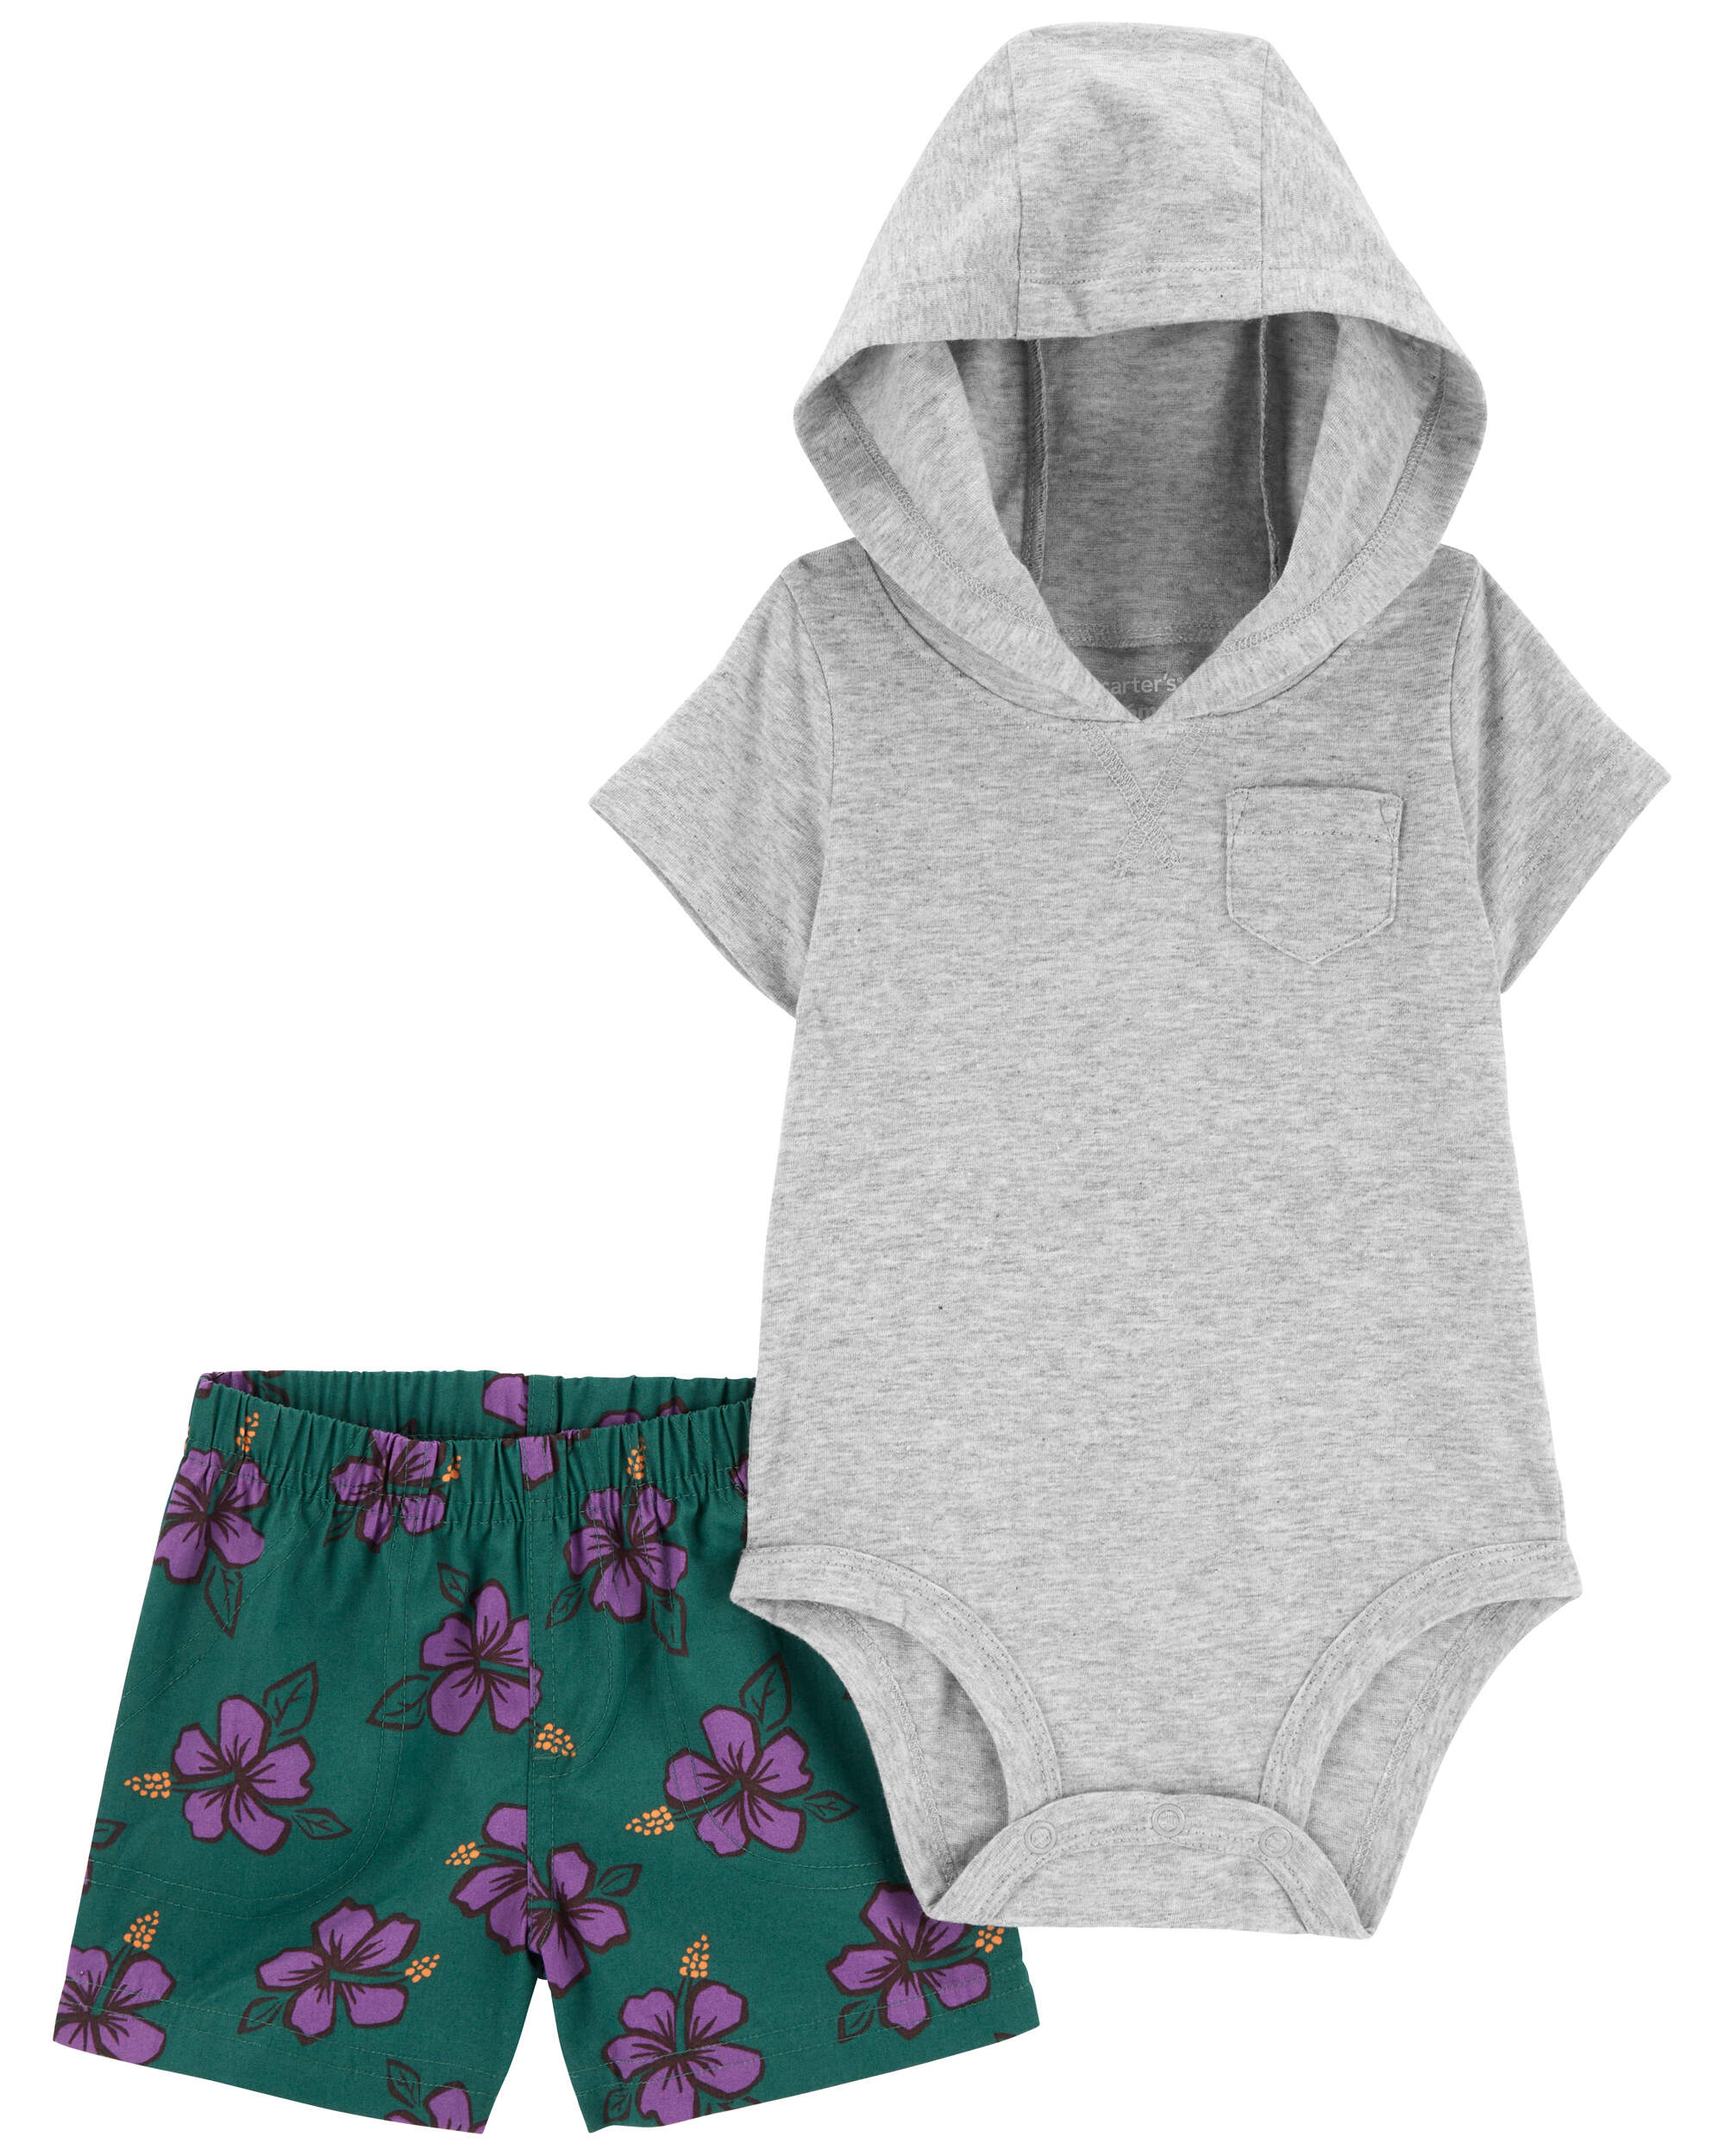 Rainbow baby bodysuit – Primrose Fleur